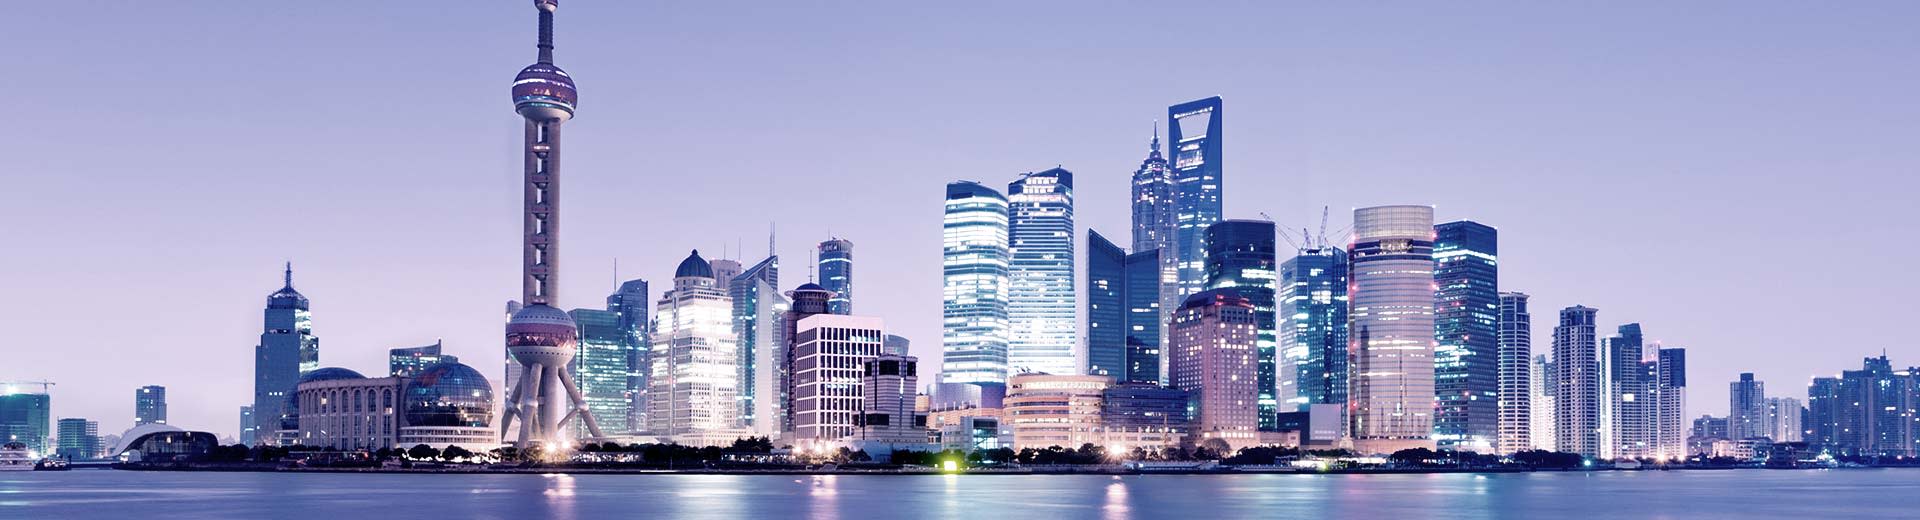 Die Skyline von Shanghai brogt mit einer Vielzahl moderner und hoch aufragender Skyraper im Halblicht der Dämmerung.